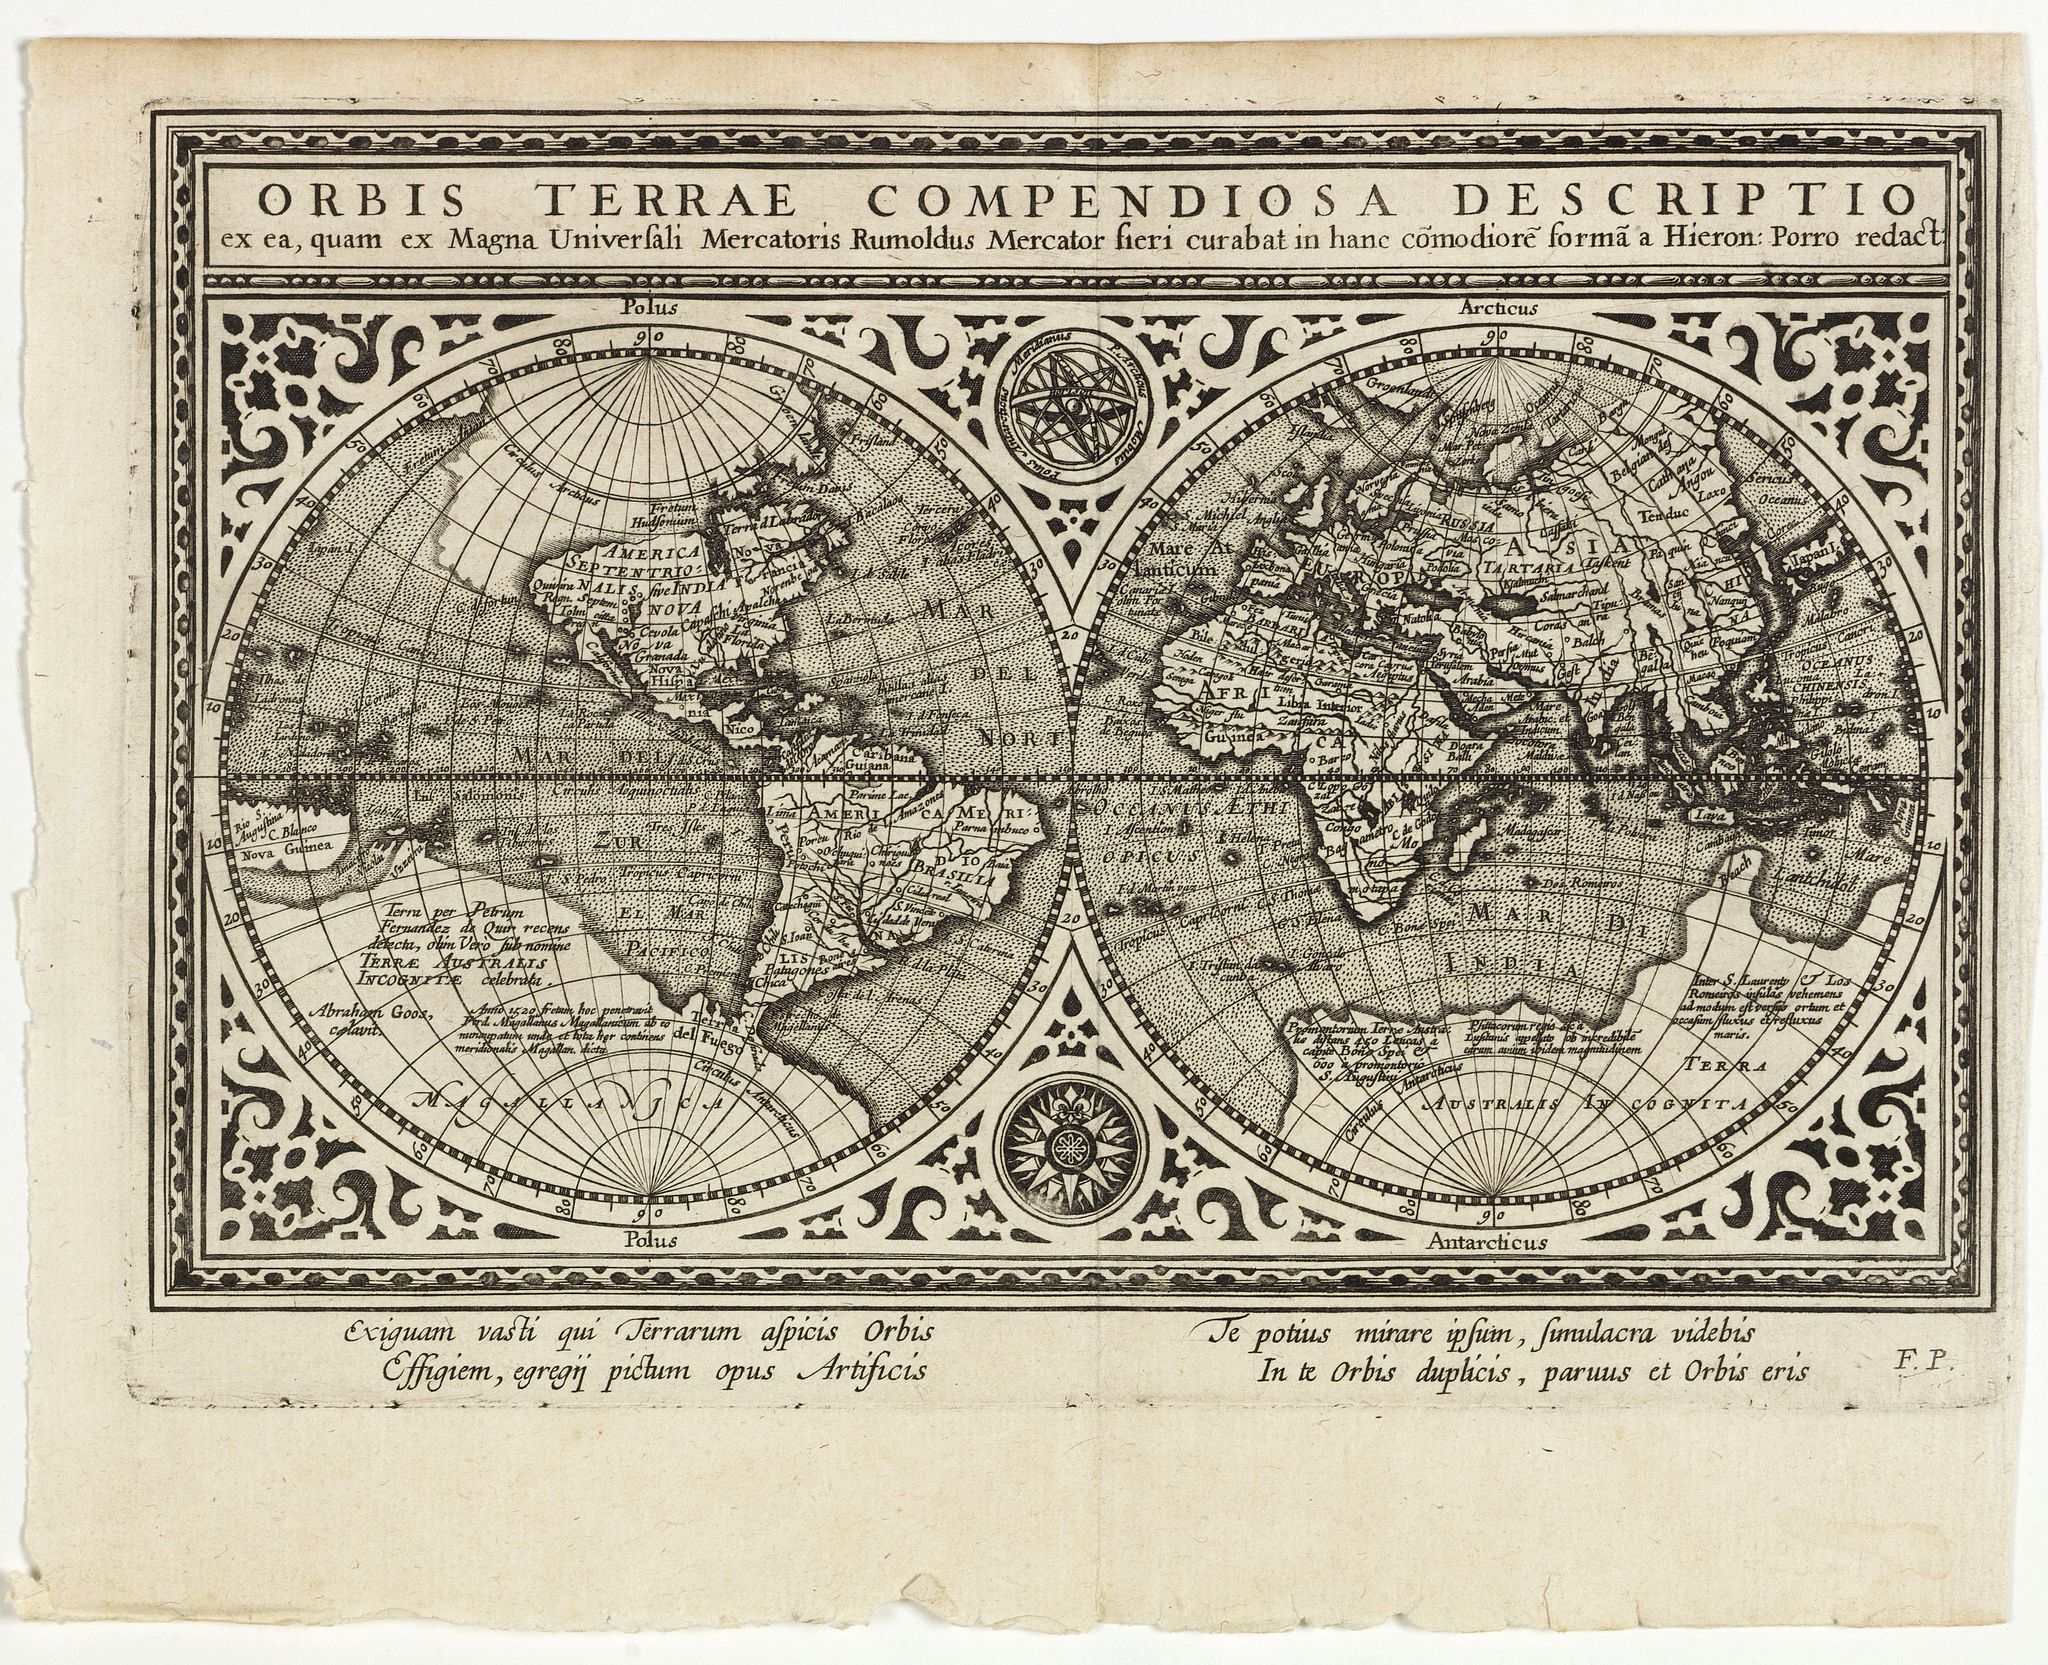 Orbis Terrae Compendiosa descriptio. . . - Old map by MAGINI, G.A.